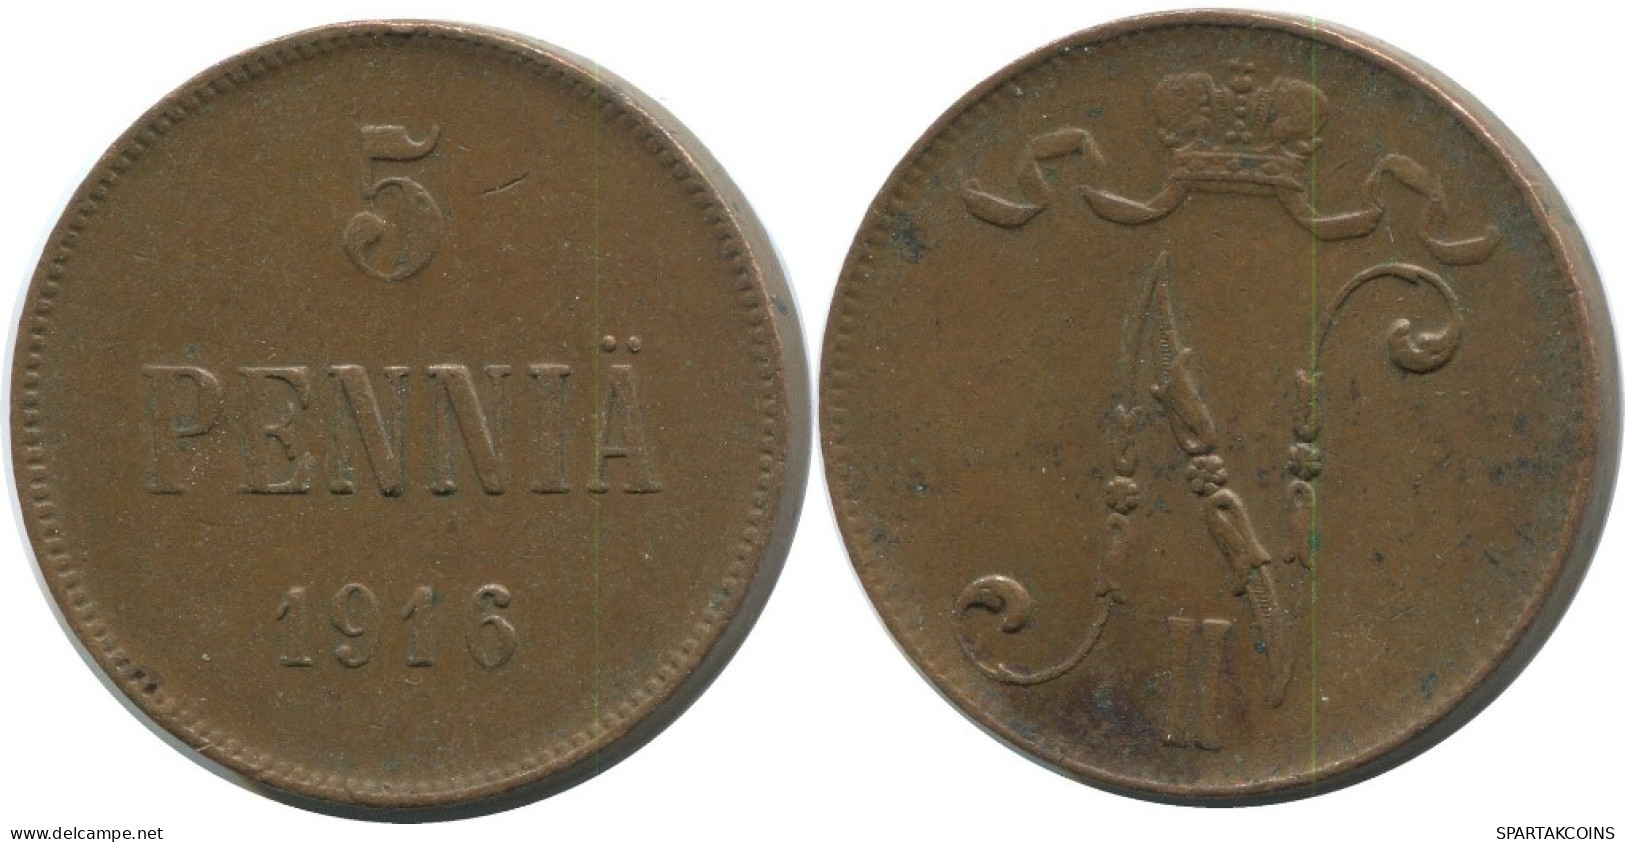 5 PENNIA 1916 FINLAND Coin RUSSIA EMPIRE #AB132.5.U.A - Finlande